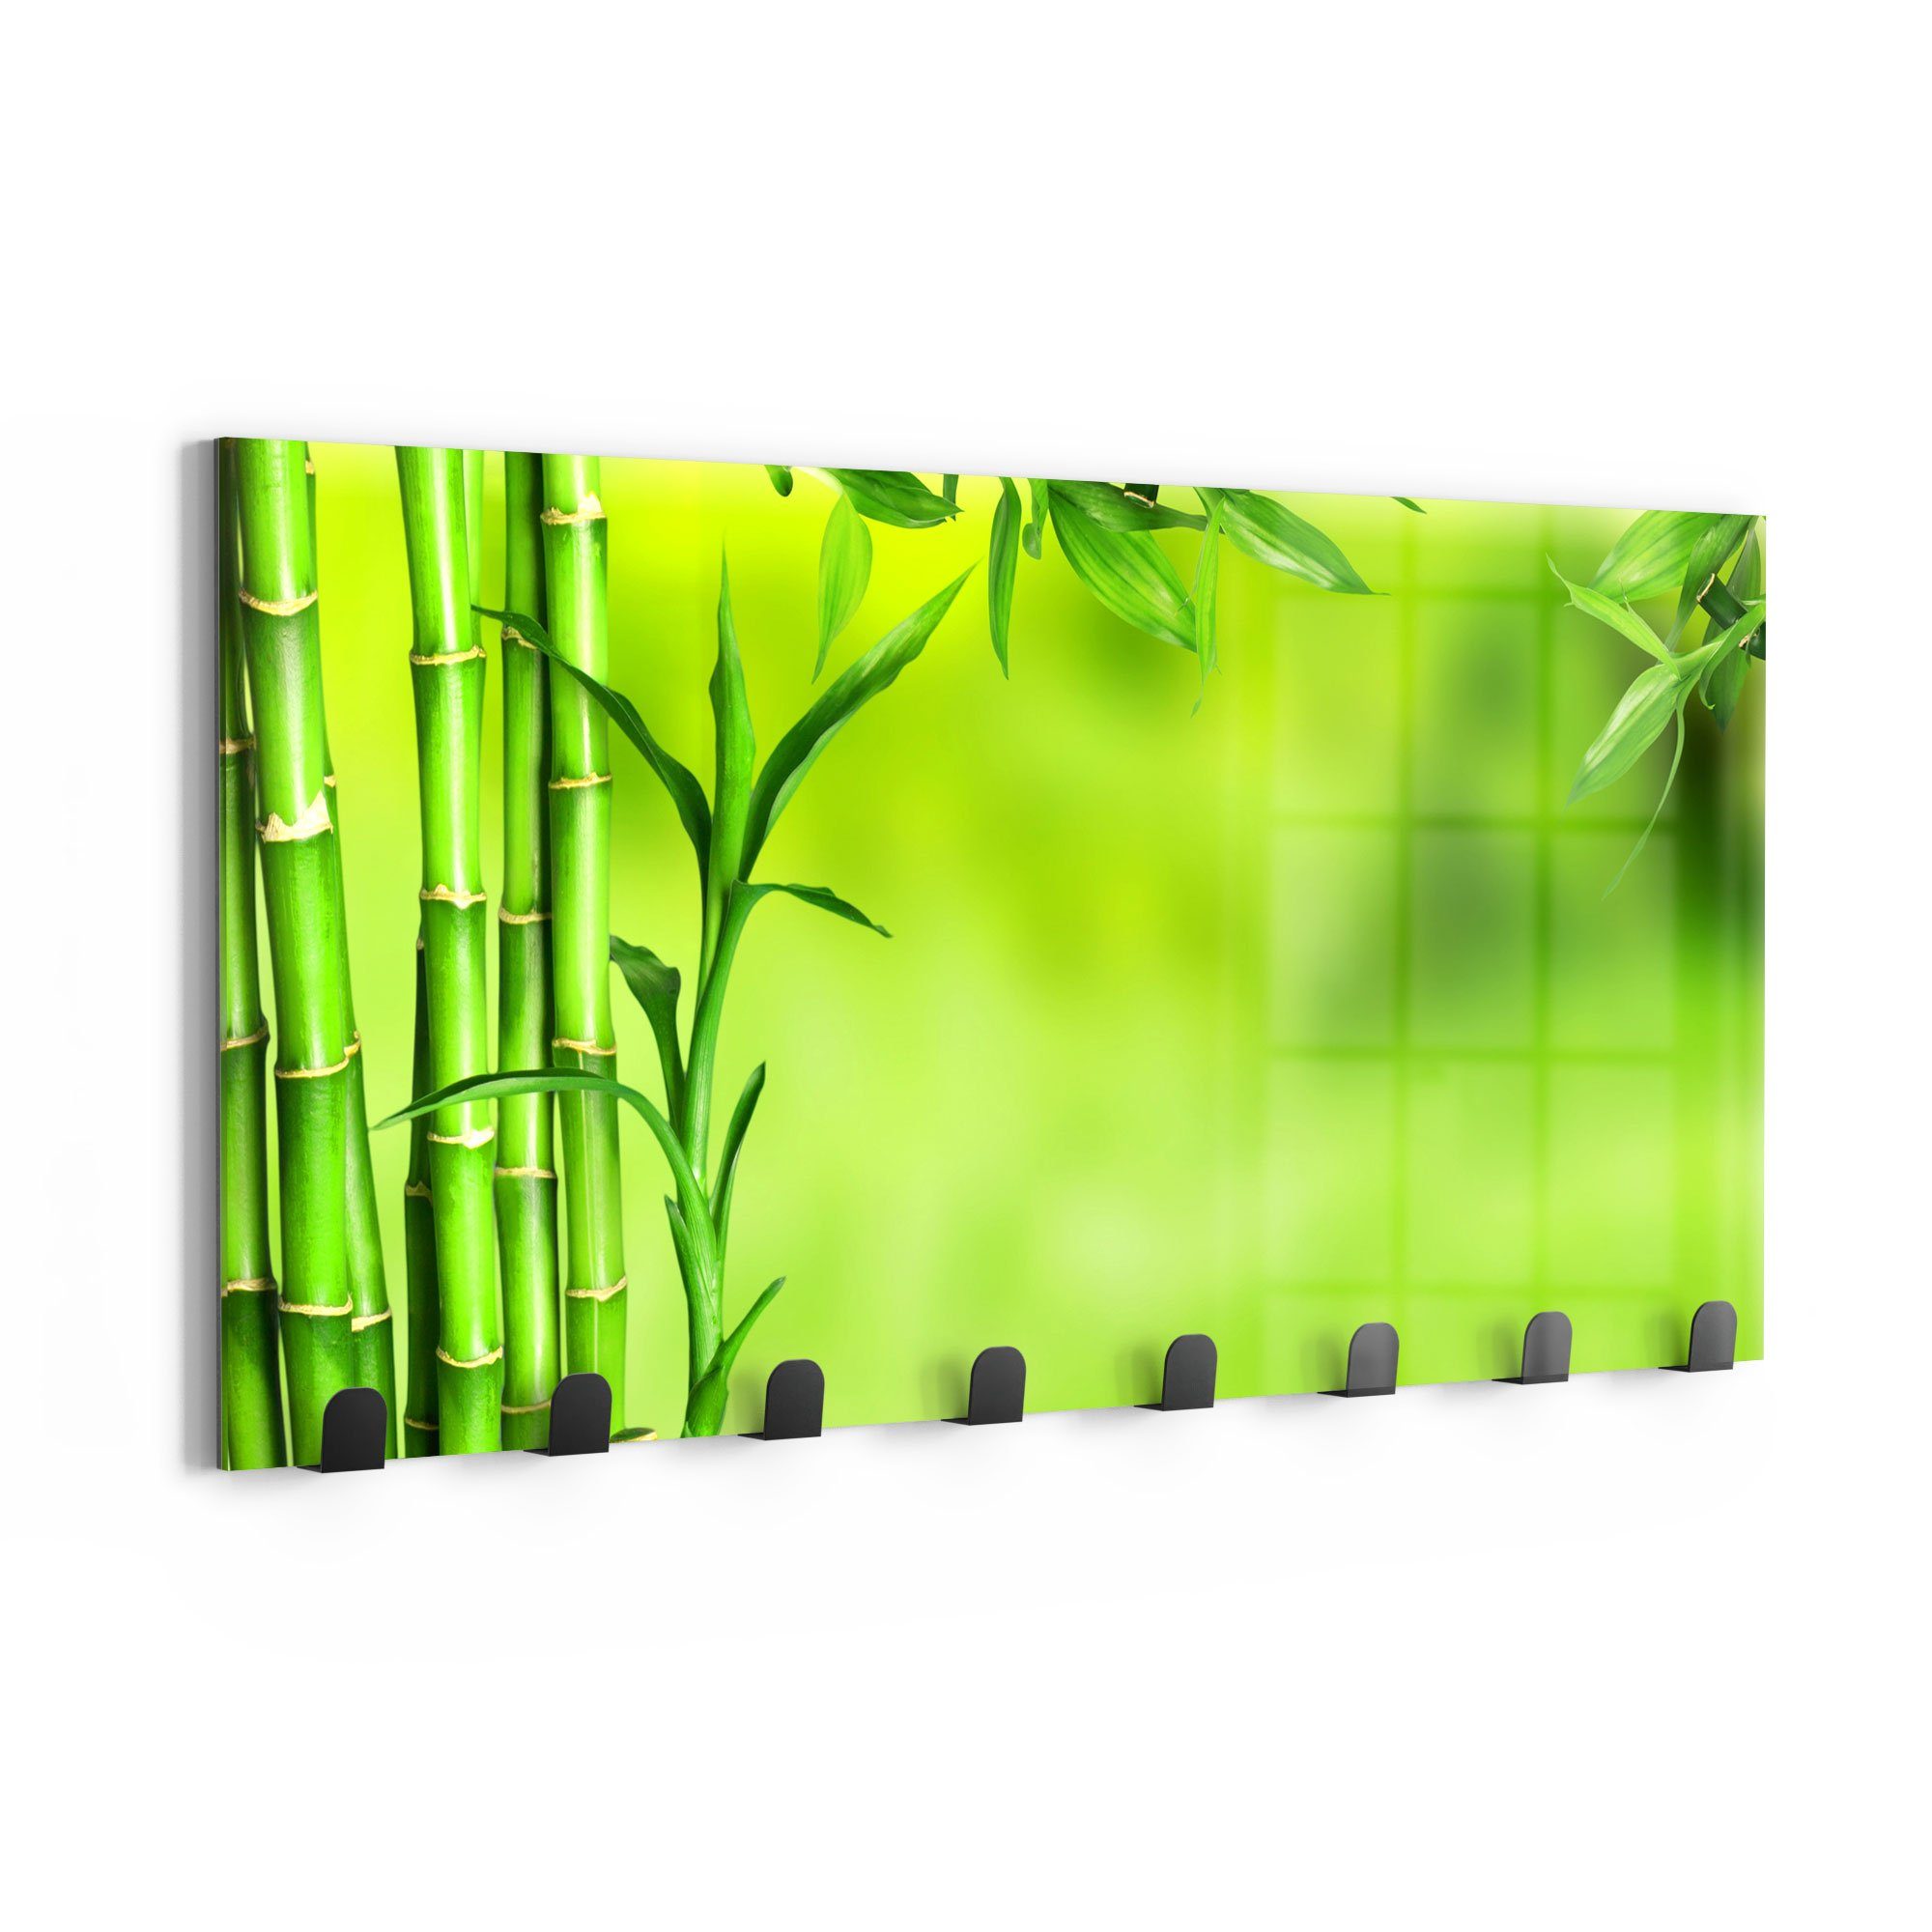 DEQORI Kleiderhaken 'Grüne Bambushalme', Glas Paneel beschreibbar magnetisch Garderobe